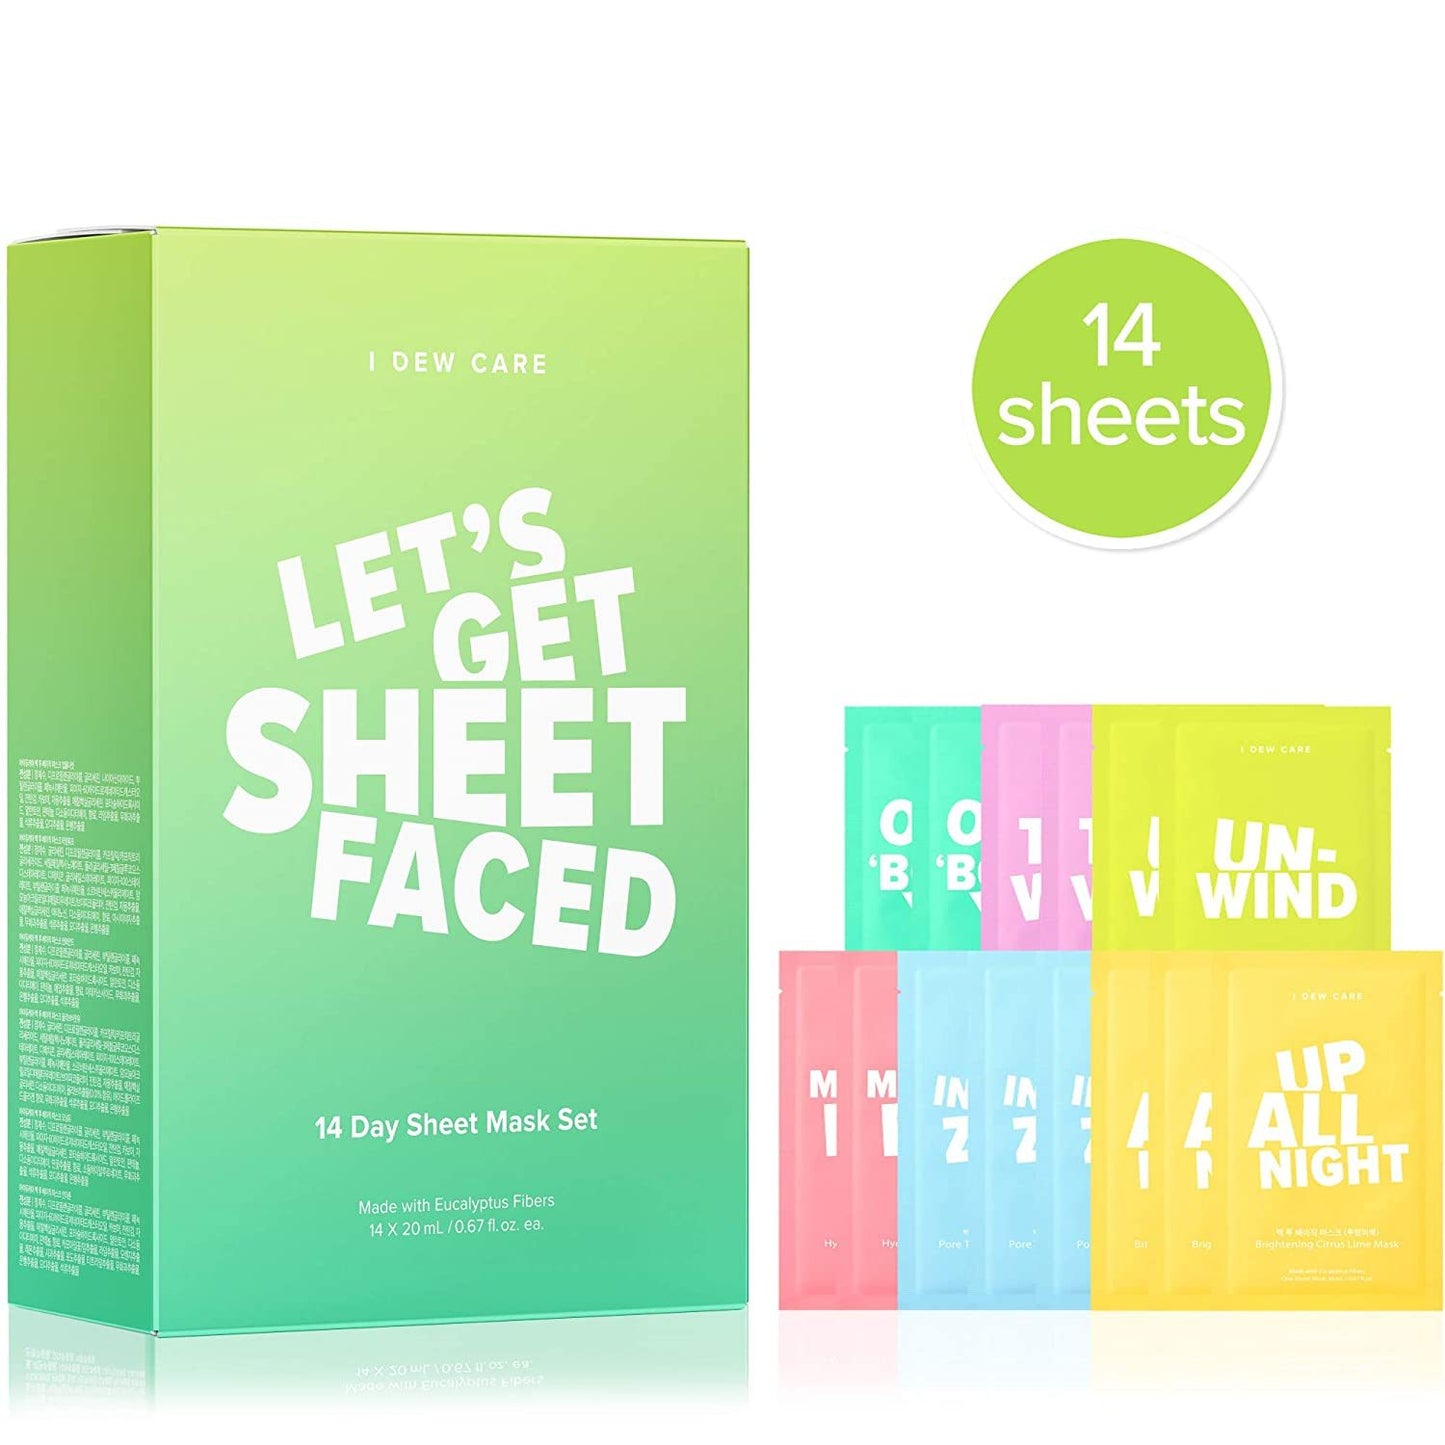 I Dew Care Let's Get Sheet Faced Mask Set - lily & onyx